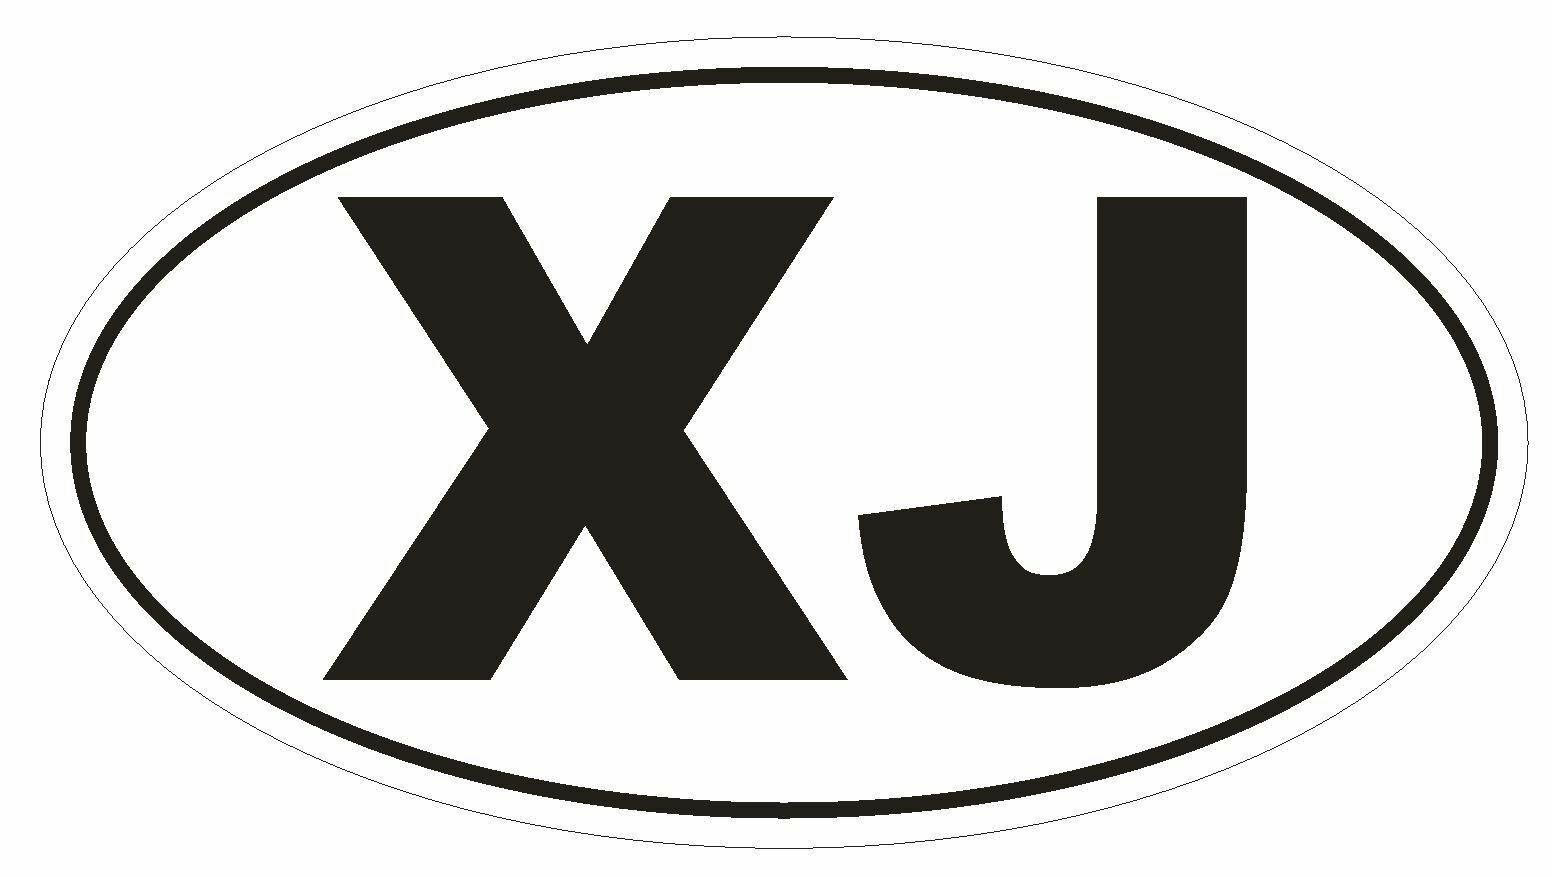 XJ Oval Bumper Sticker or Helmet Sticker D155 Euro Oval offroad 4 wheel Cherokee - $1.39 - $75.00